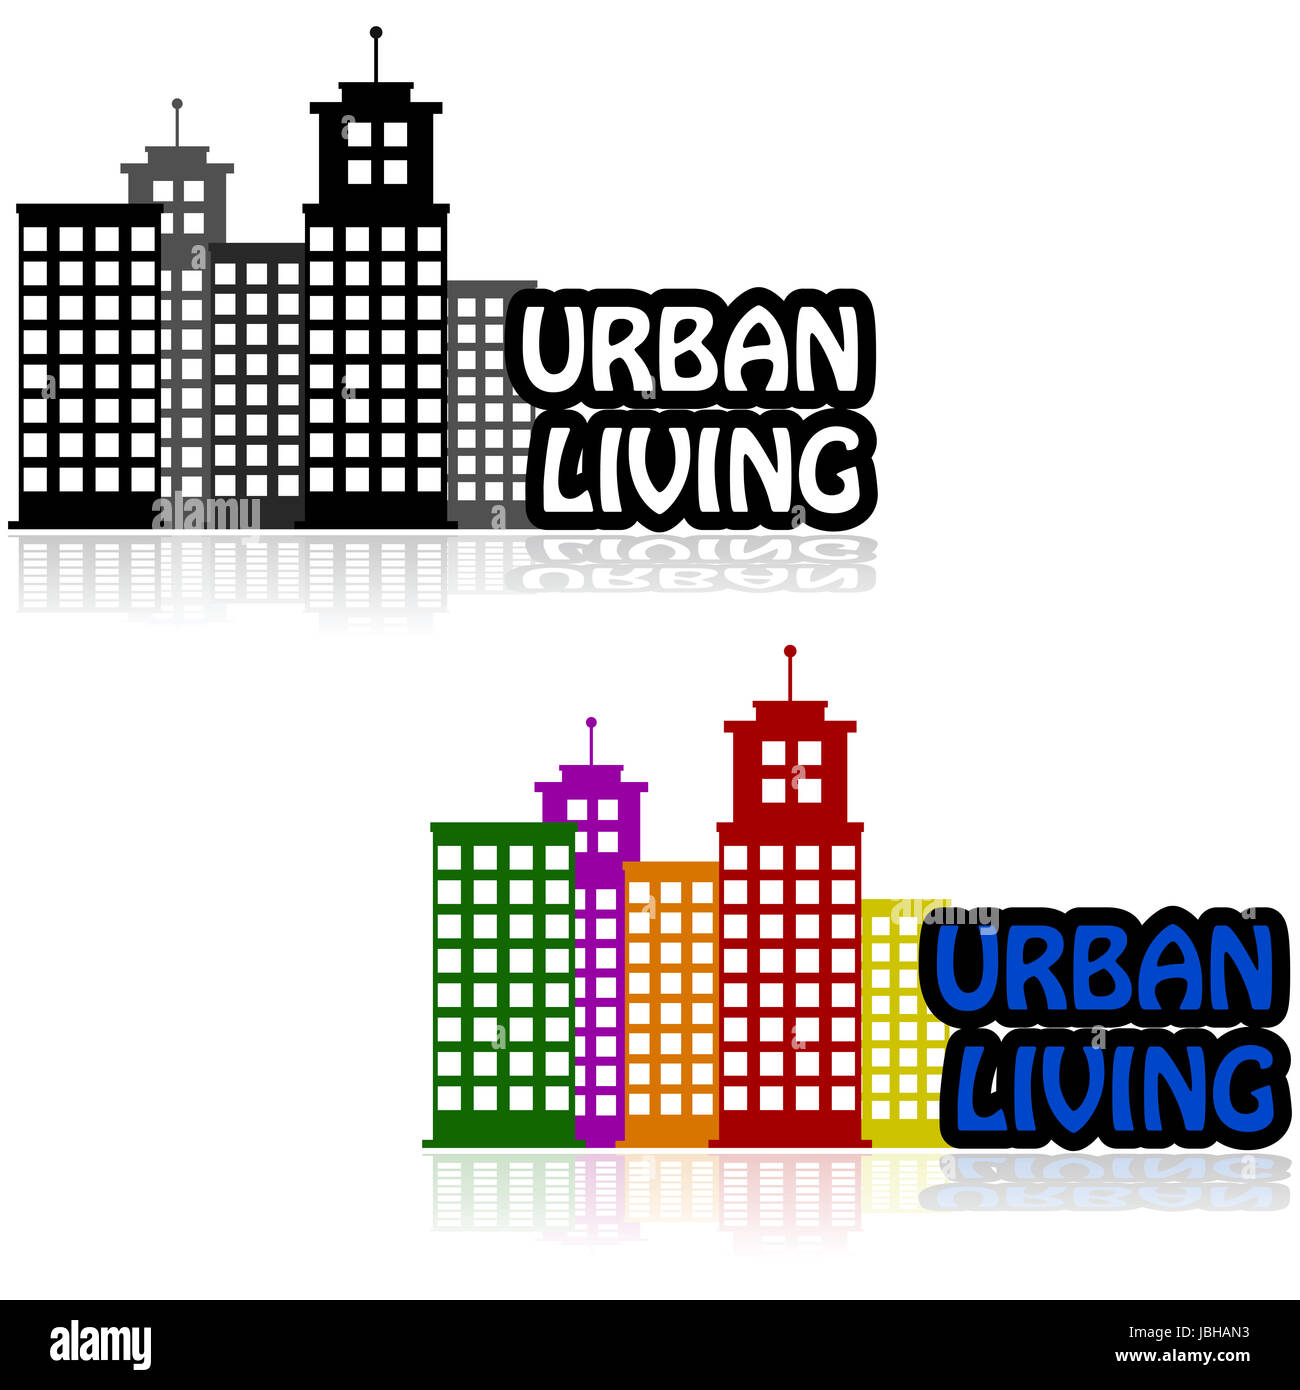 Symbol zeigt Gebäude repräsentieren eine Innenstadt neben der Worte "Urban Living" Stockfoto